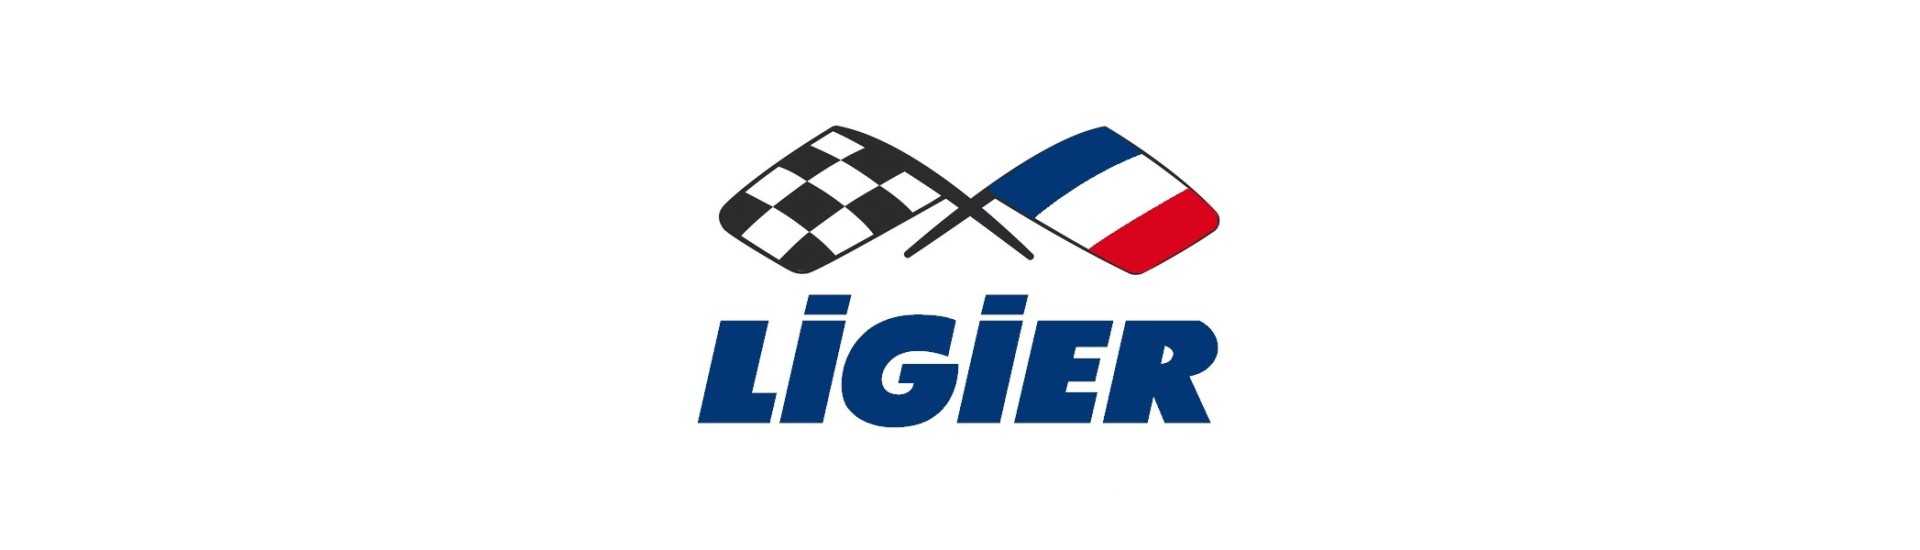 Paras hinta autolle ilman lupaa Ligier